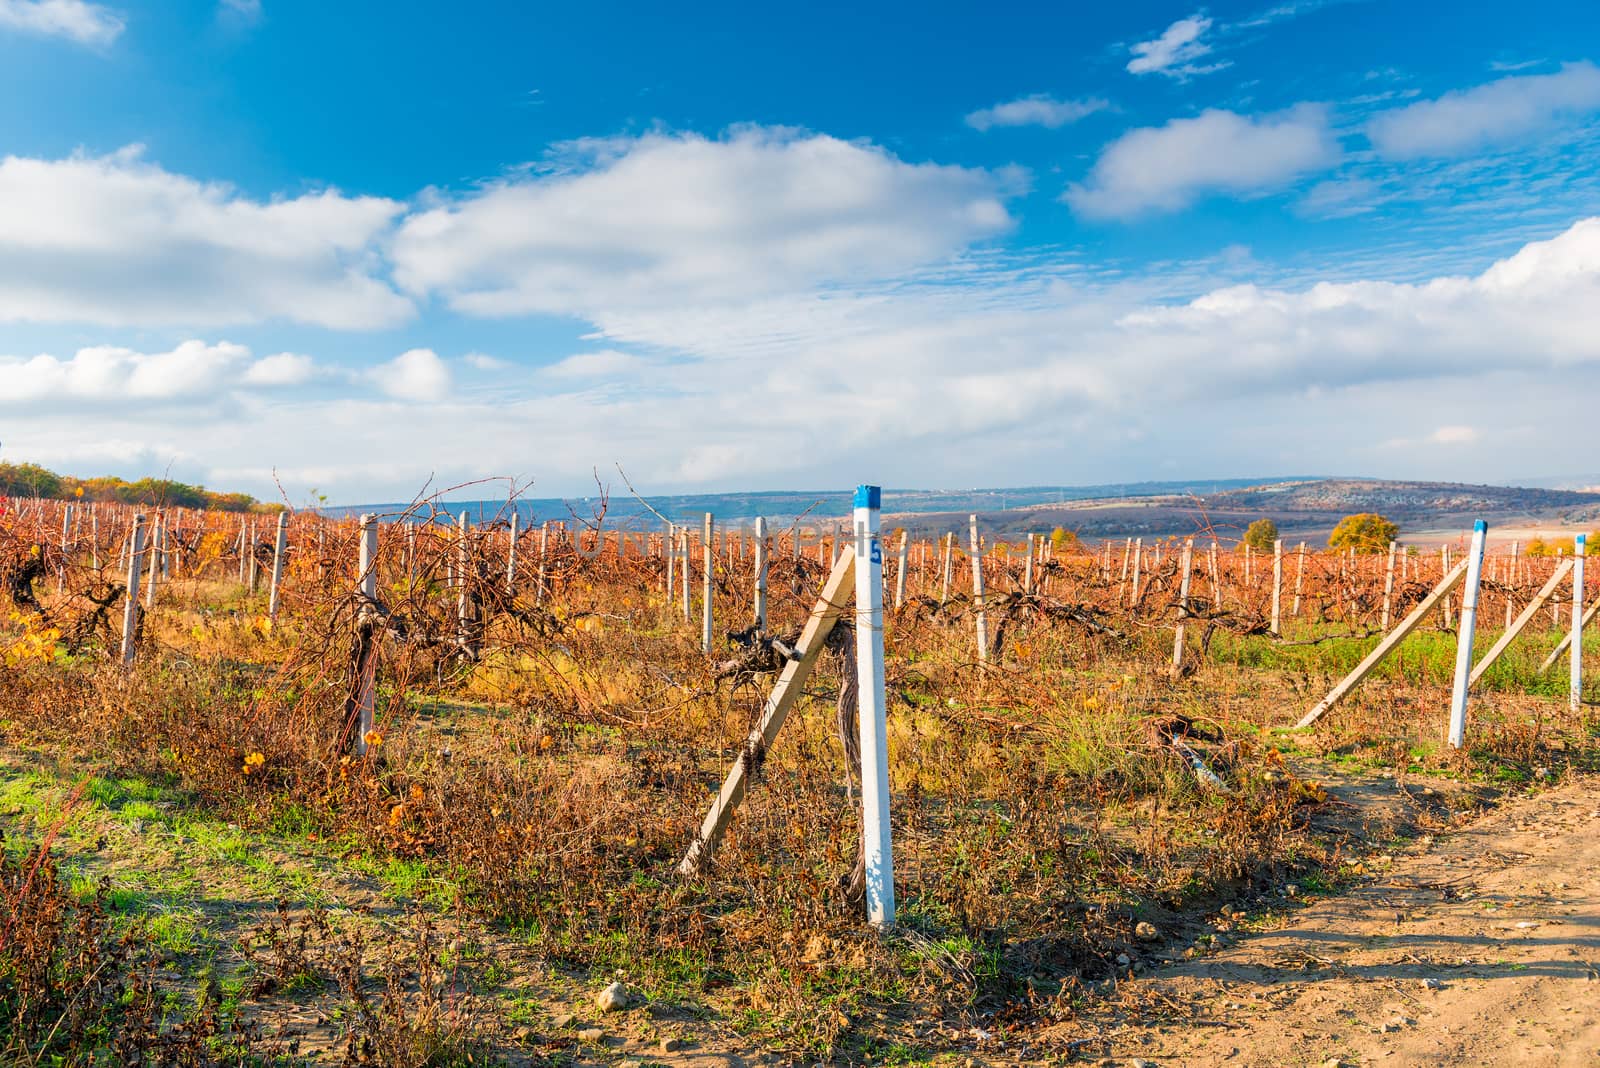 Vineyard plantation after harvest, autumn landscape by kosmsos111